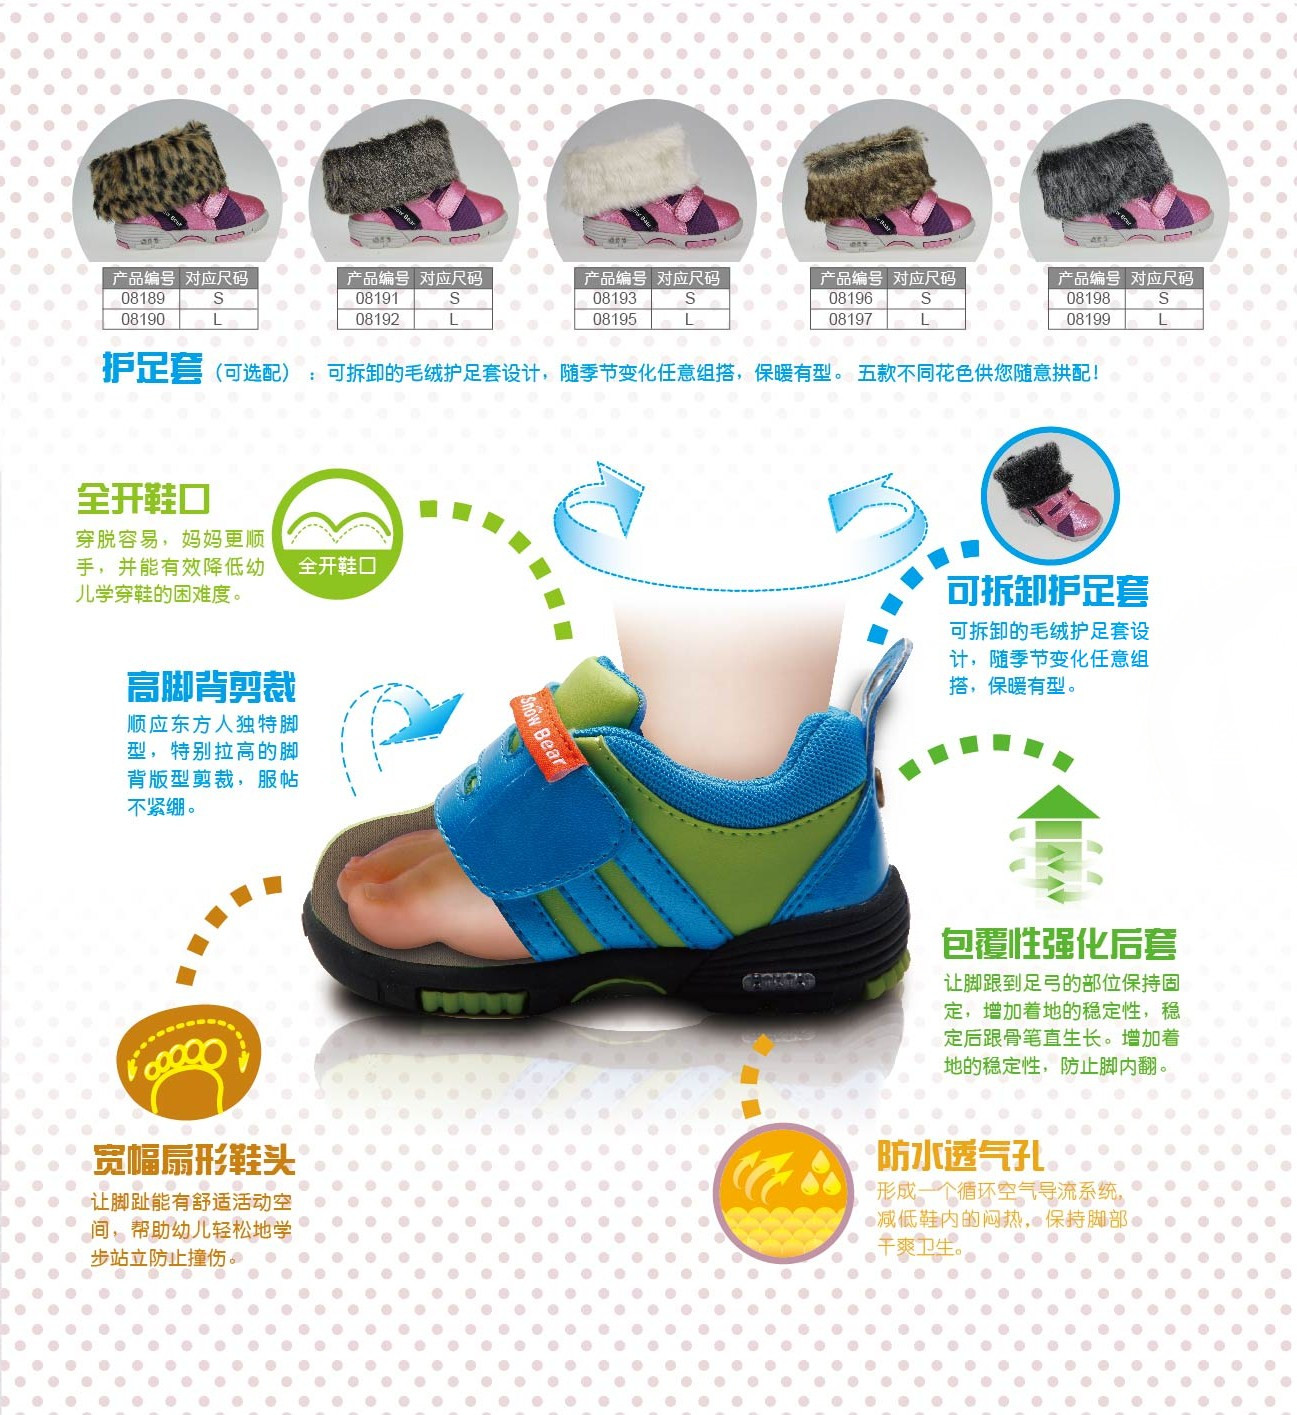 幼兒機能鞋功能特點-鞋身